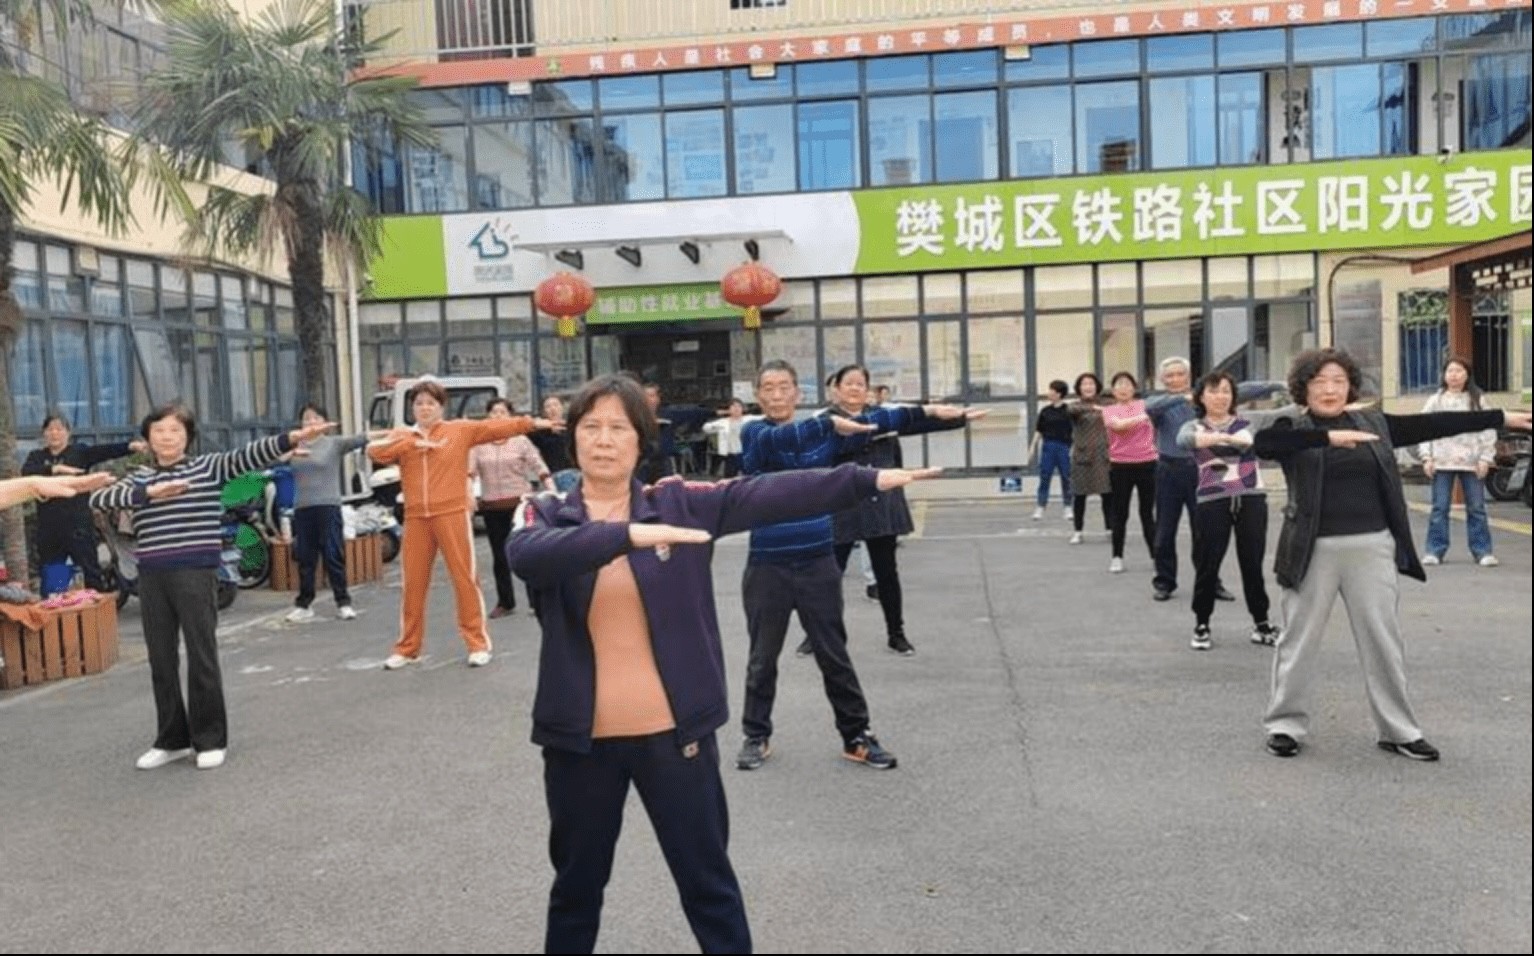 襄阳市樊城区铁路社区“侨胞之家” 掀起广播操热潮